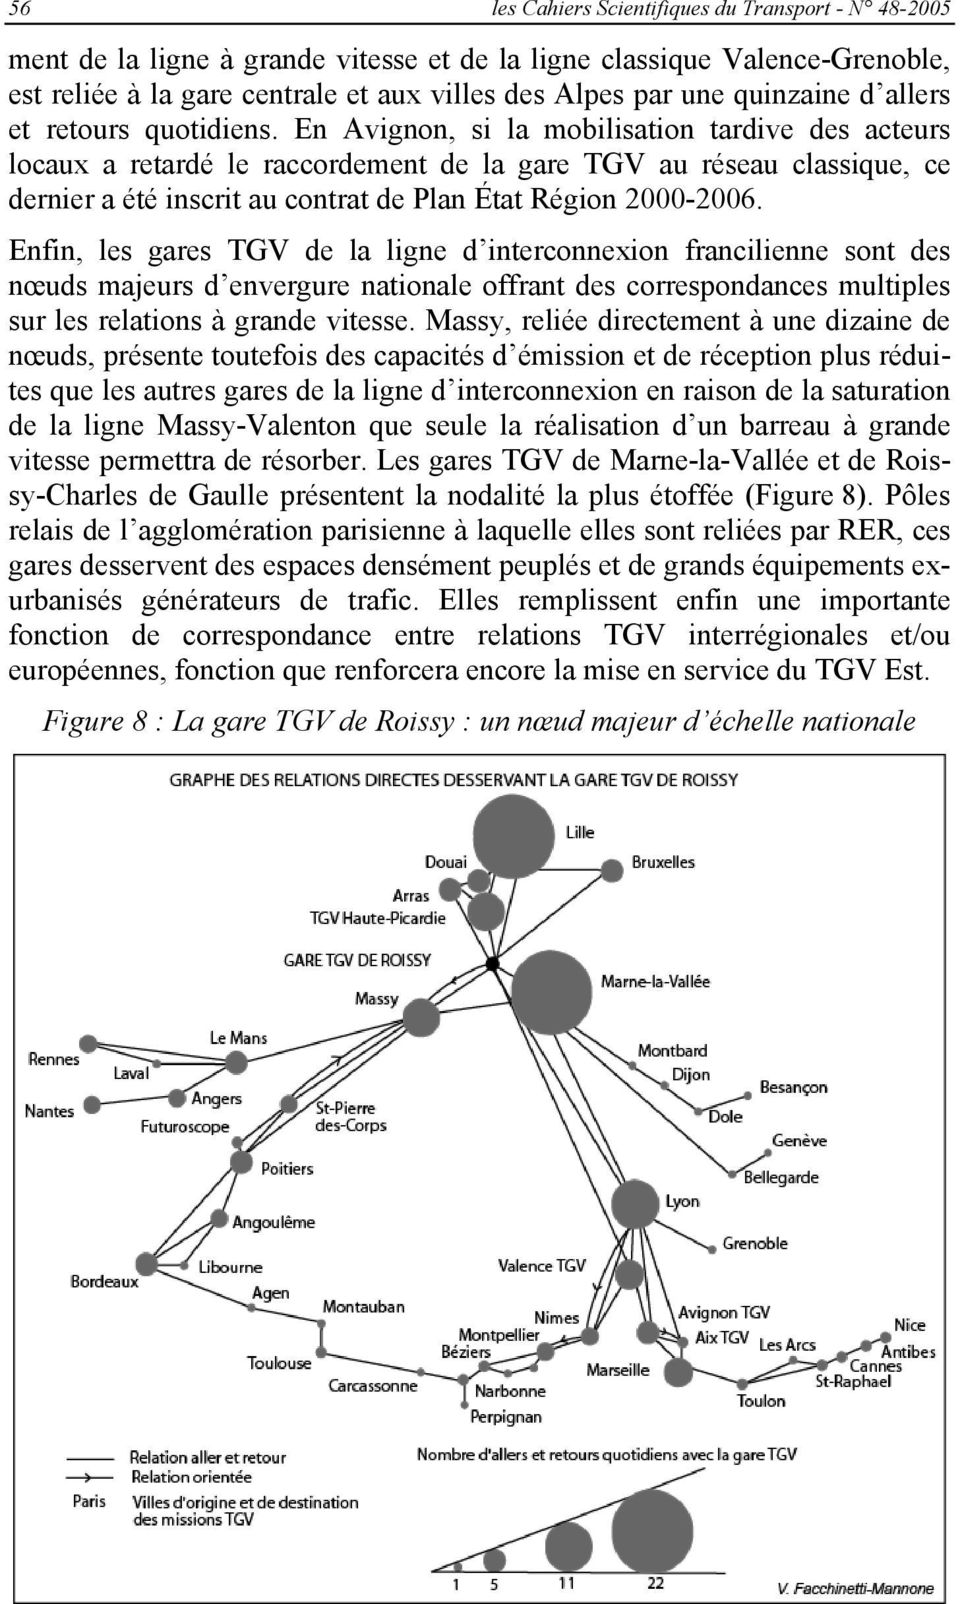 En Avignon, si la mobilisation tardive des acteurs locaux a retardé le raccordement de la gare TGV au réseau classique, ce dernier a été inscrit au contrat de Plan État Région 2000-2006.